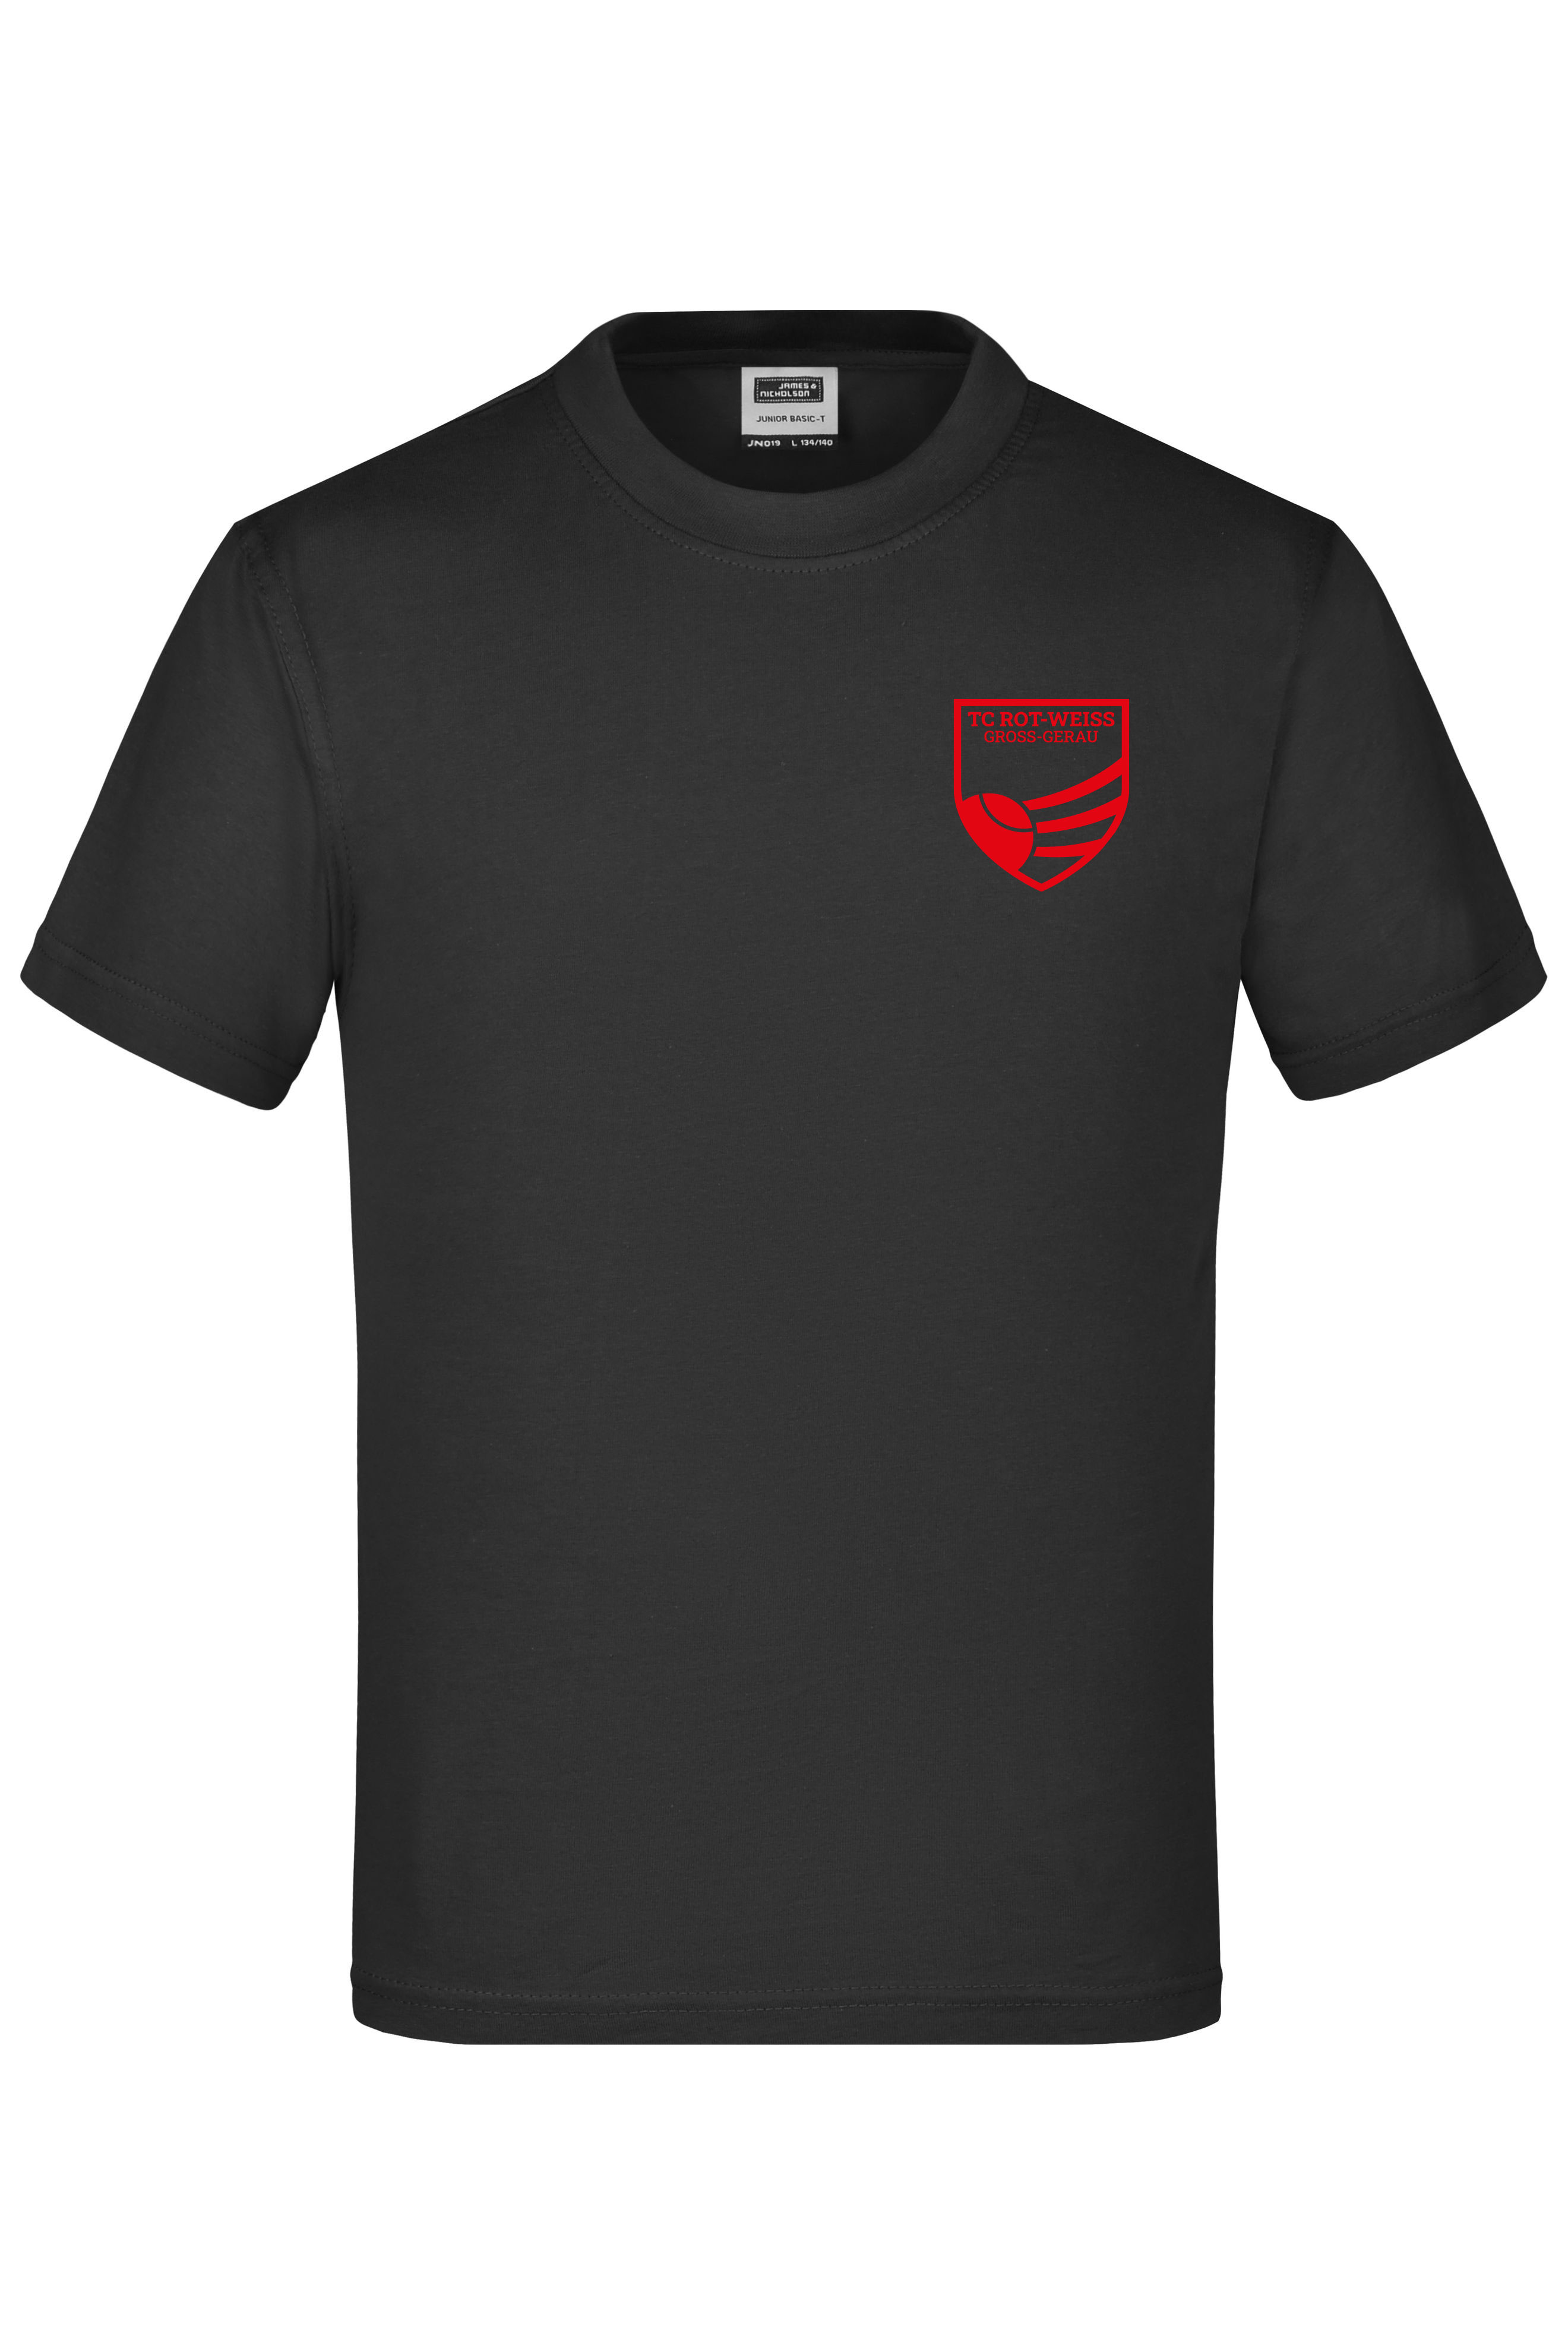 TC Rot-Weiss - Vorteil GG - Kinder T-Shirt rot auf schwarz